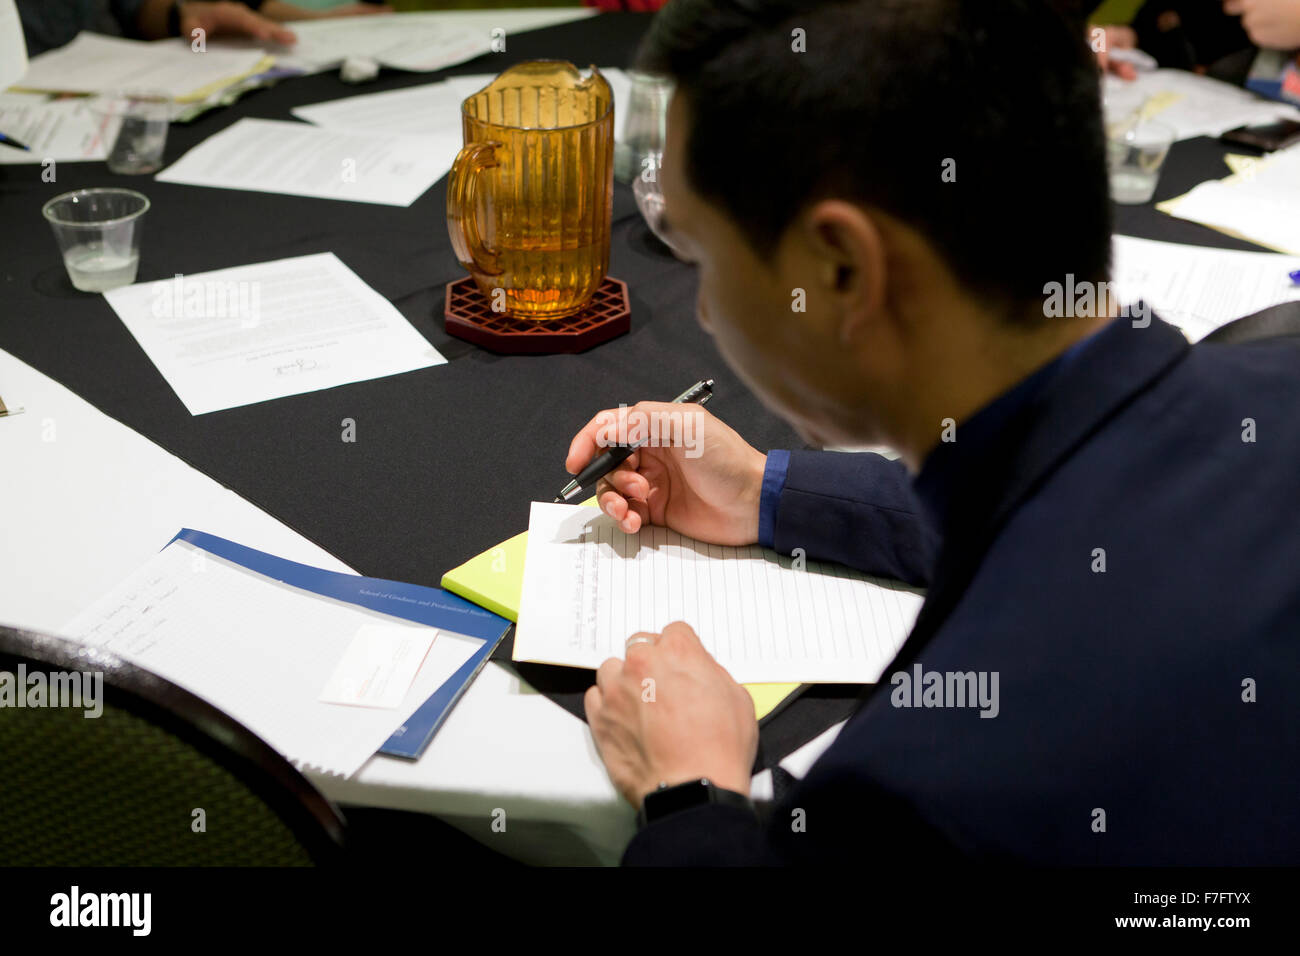 Young Asian man filling out an application at job recruiting fair - Arlington, Virginia USA Stock Photo